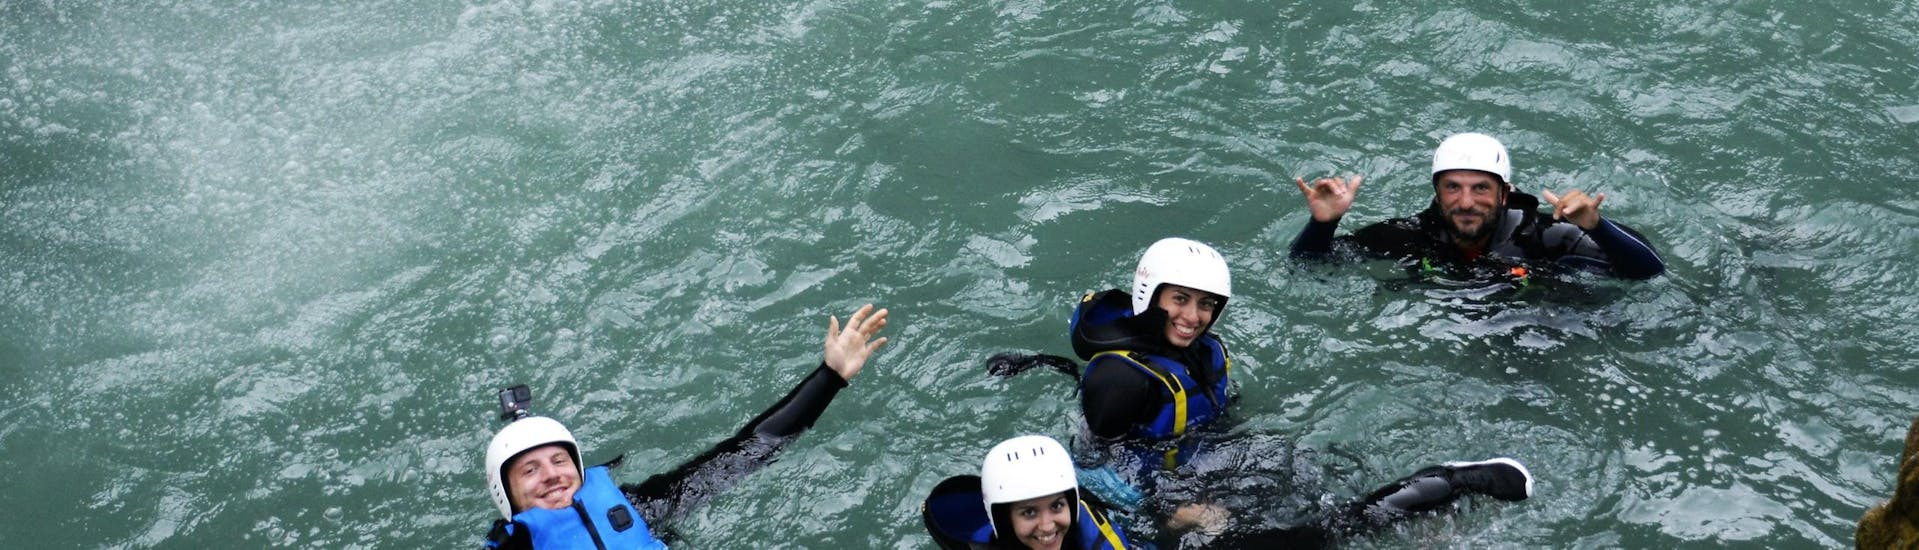 Un gruppo di amici e una guida si divertono galleggiando nell'acqua con l'attrezzatura da canyoning durante il Canyoning nel fiume Sorba con Centro Canoa e Rafting Monrosa.